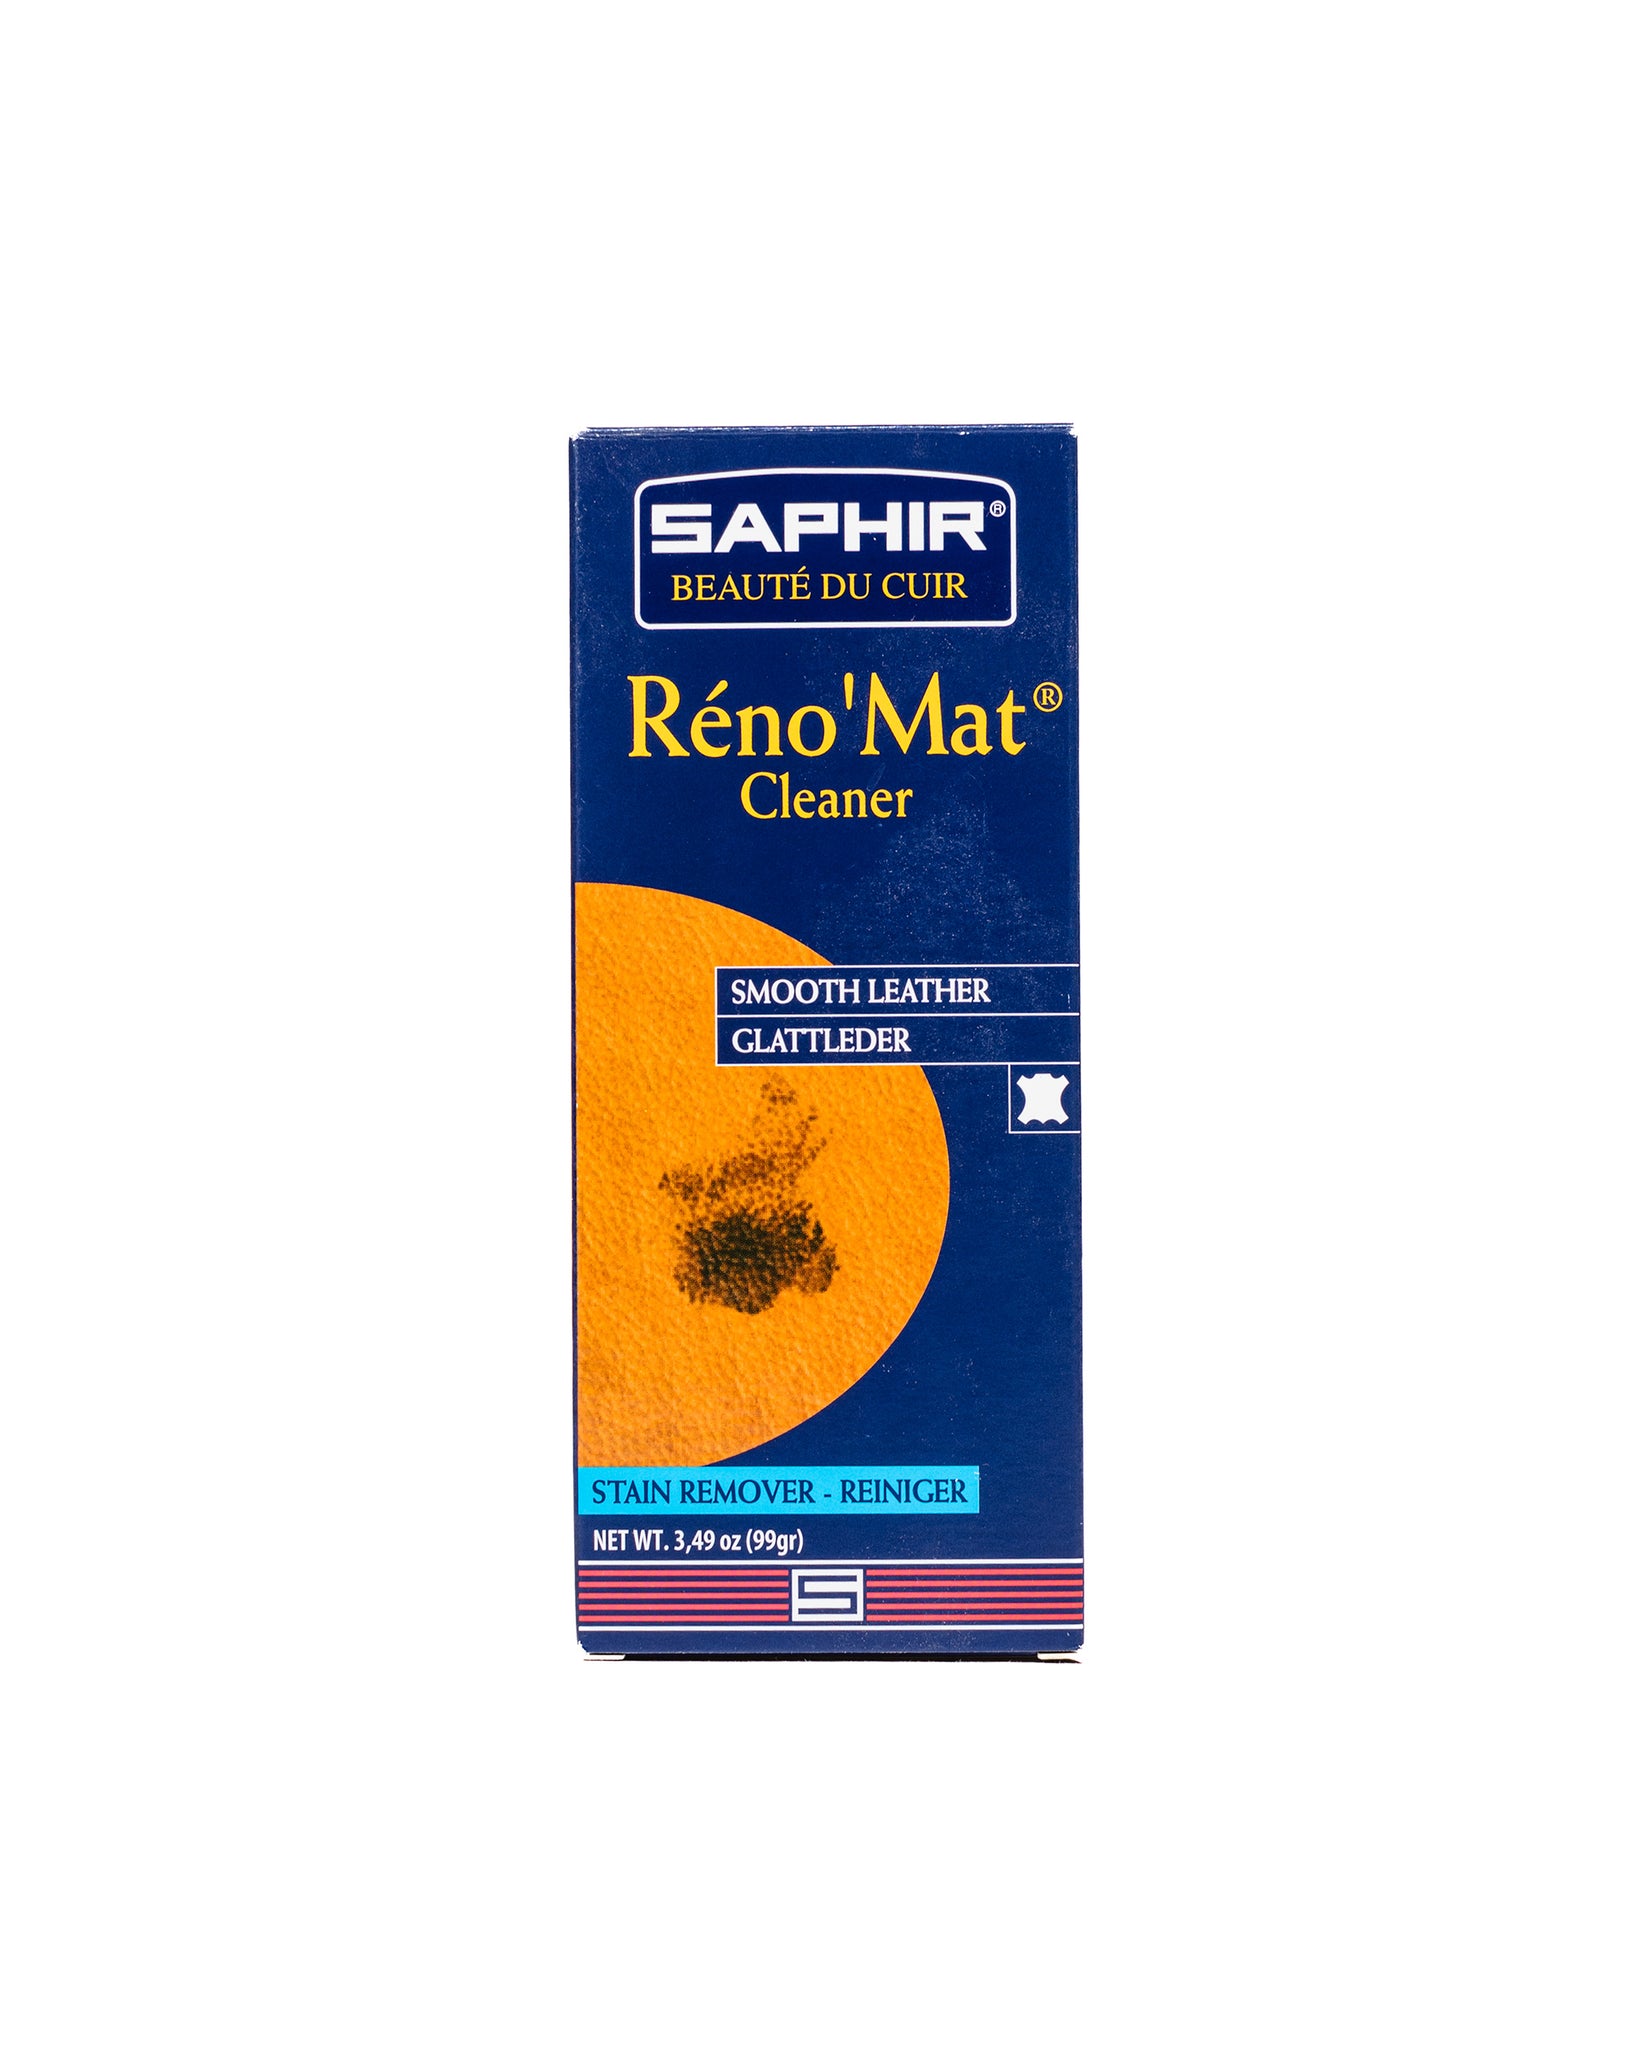 Saphir Reno'Mat Cleaner